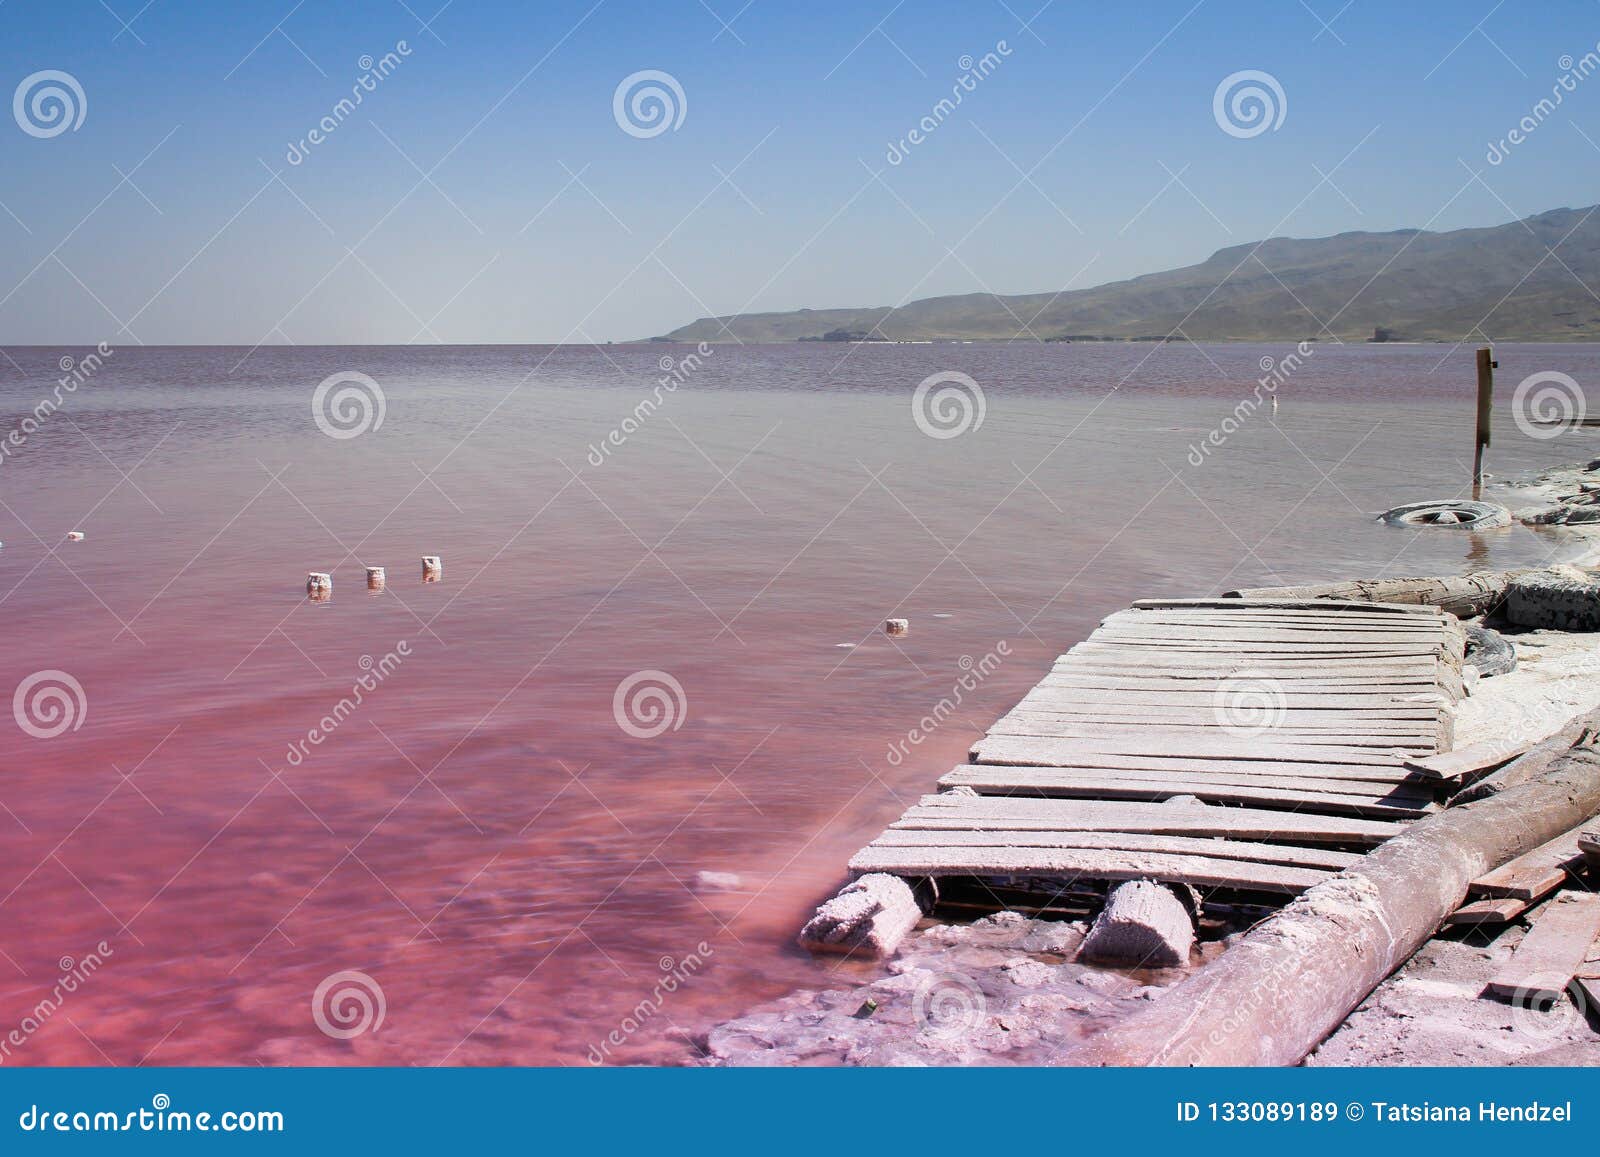 the unusual pink lake urmia, full of salt